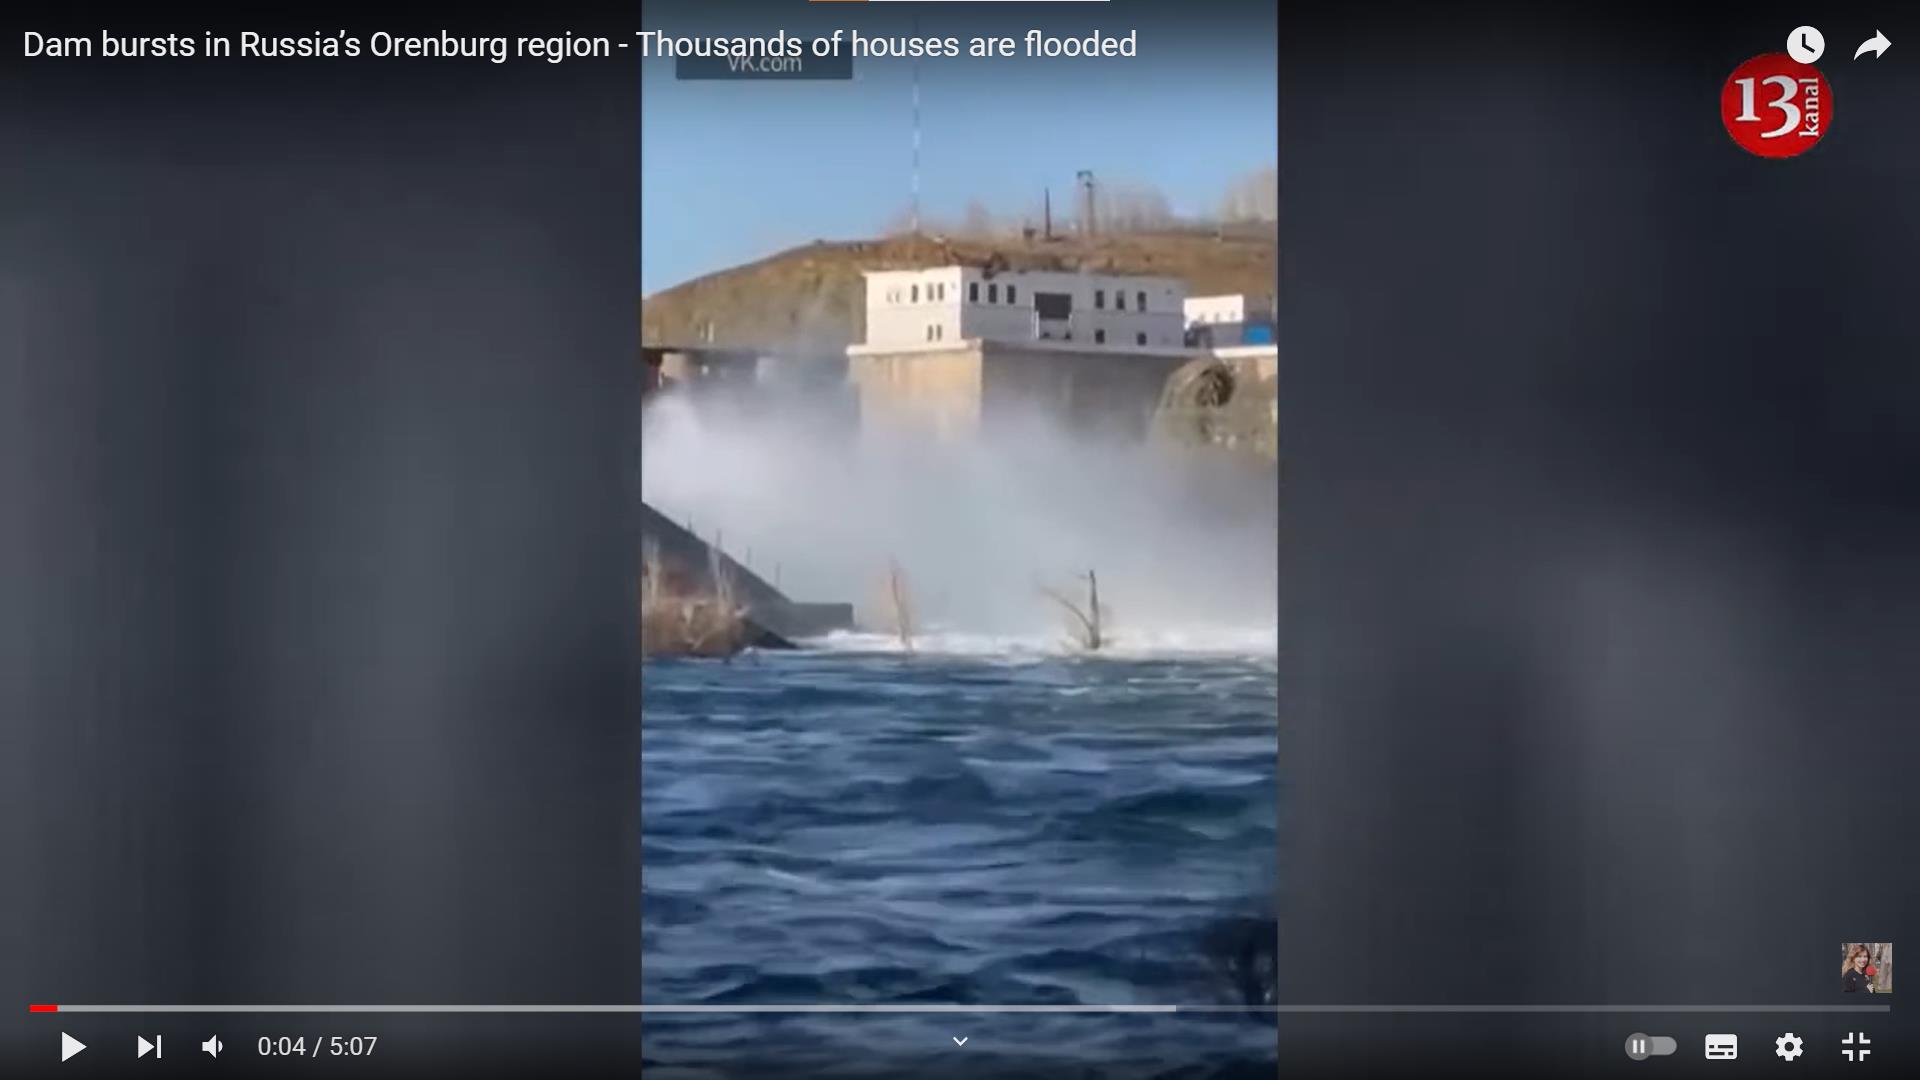 俄罗斯奥伦堡州水坝溃决，洪水淹没逾4000座房屋，当局紧急疏散数千人。取自YouTube影片